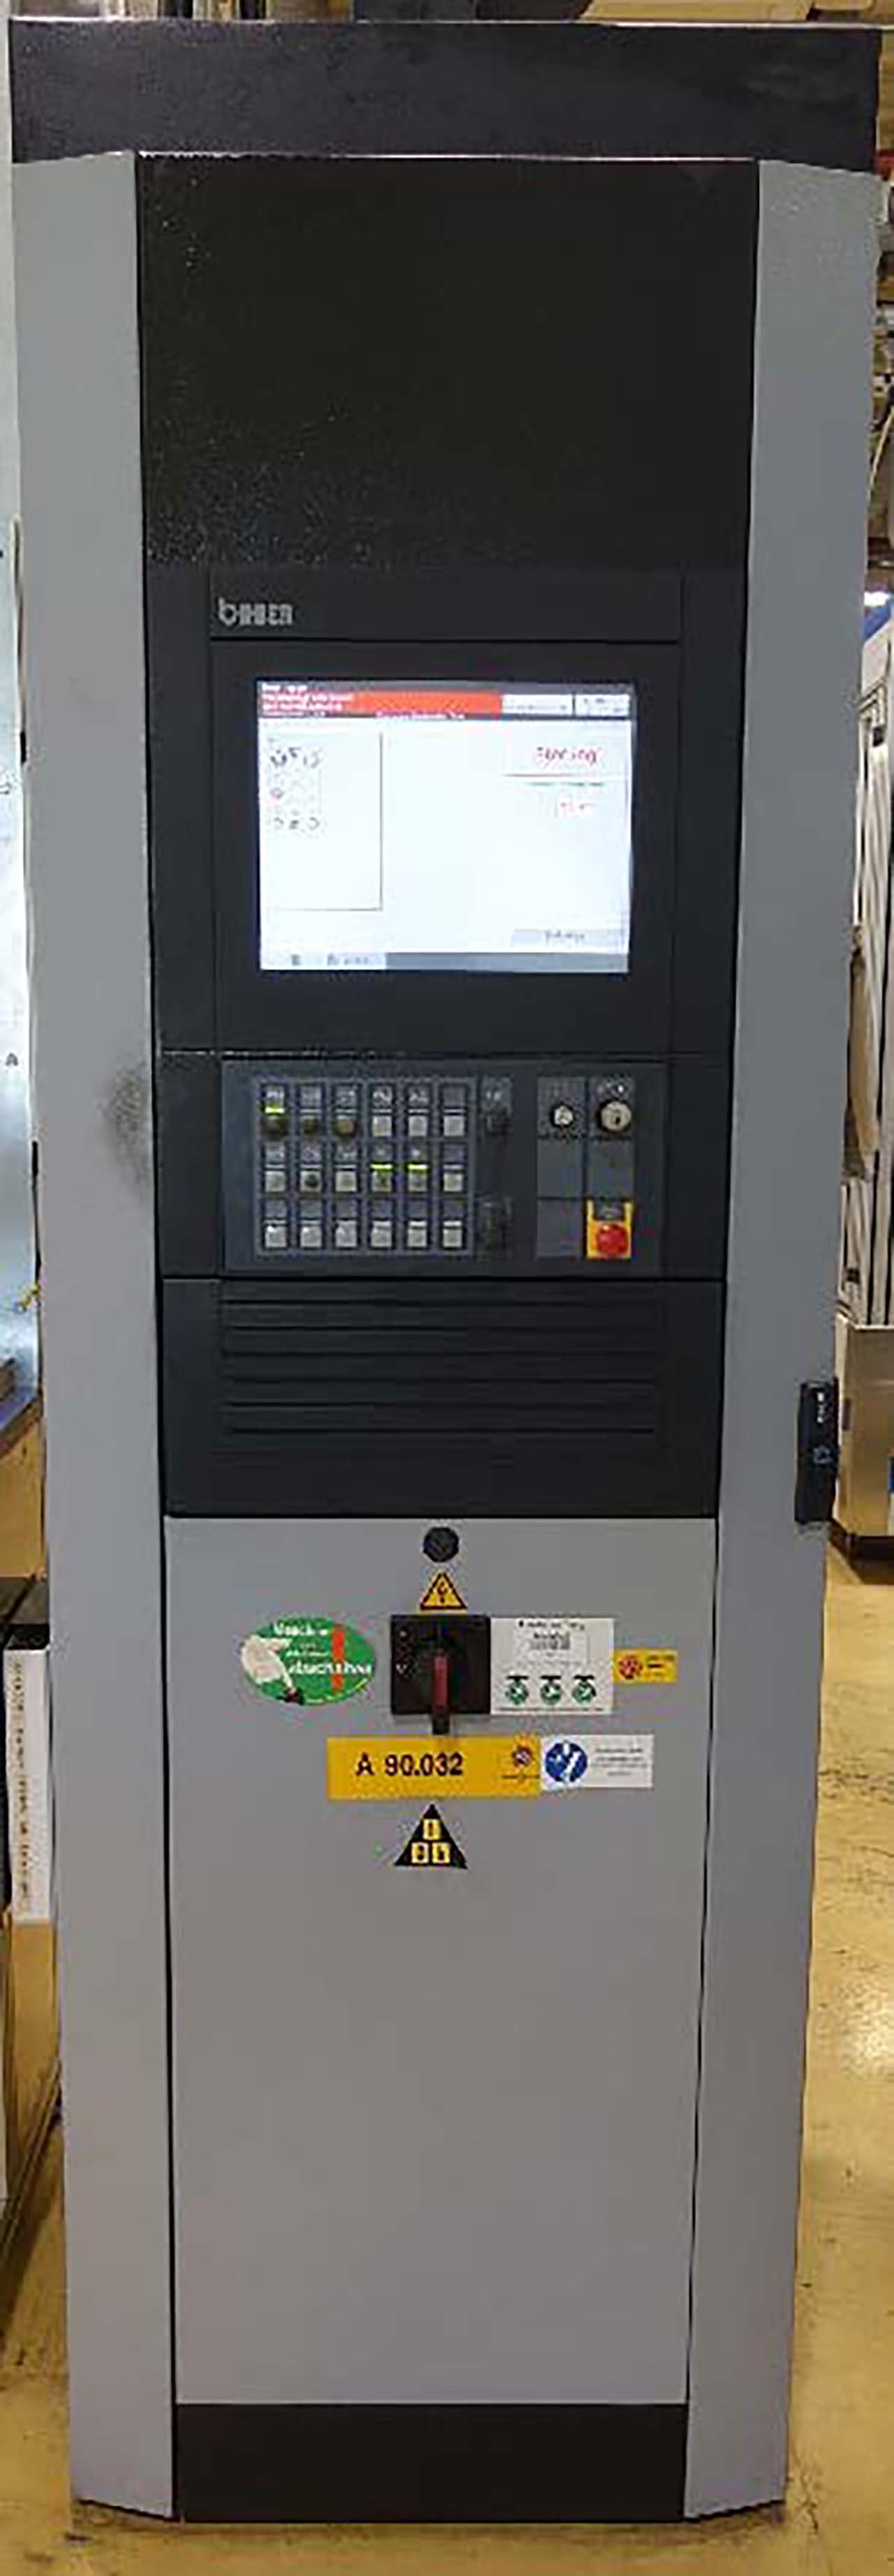 Bihler RM 40K damgalama ve şekillendirme makinesi PR2471, kullanılmış